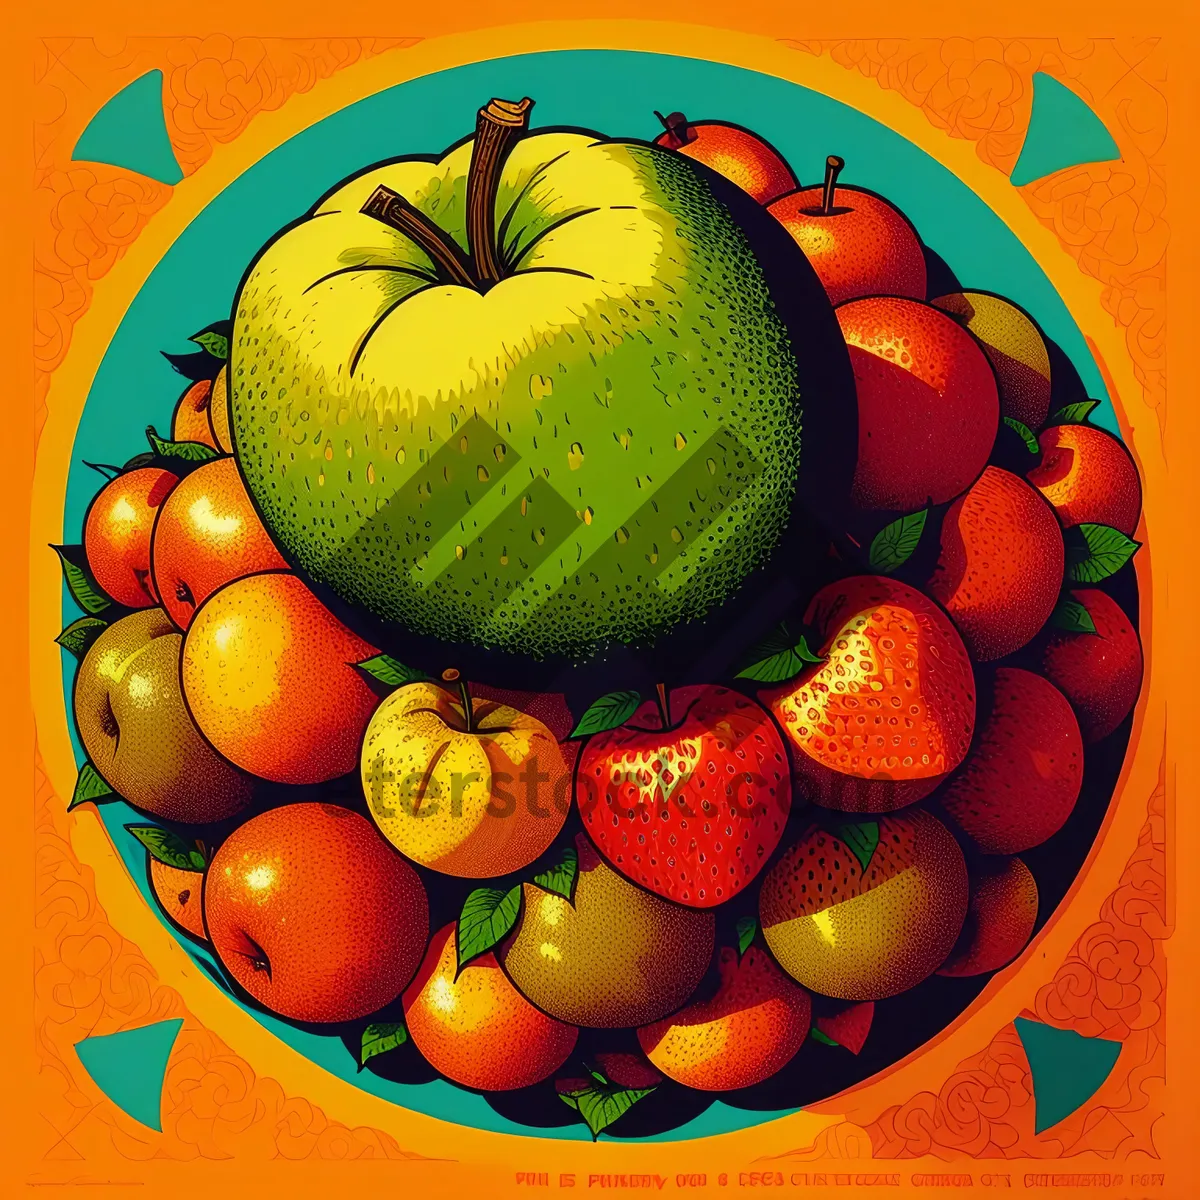 Picture of Delicious Citrus Fruit Medley: Apple, Orange, Grapefruit, Lemon.